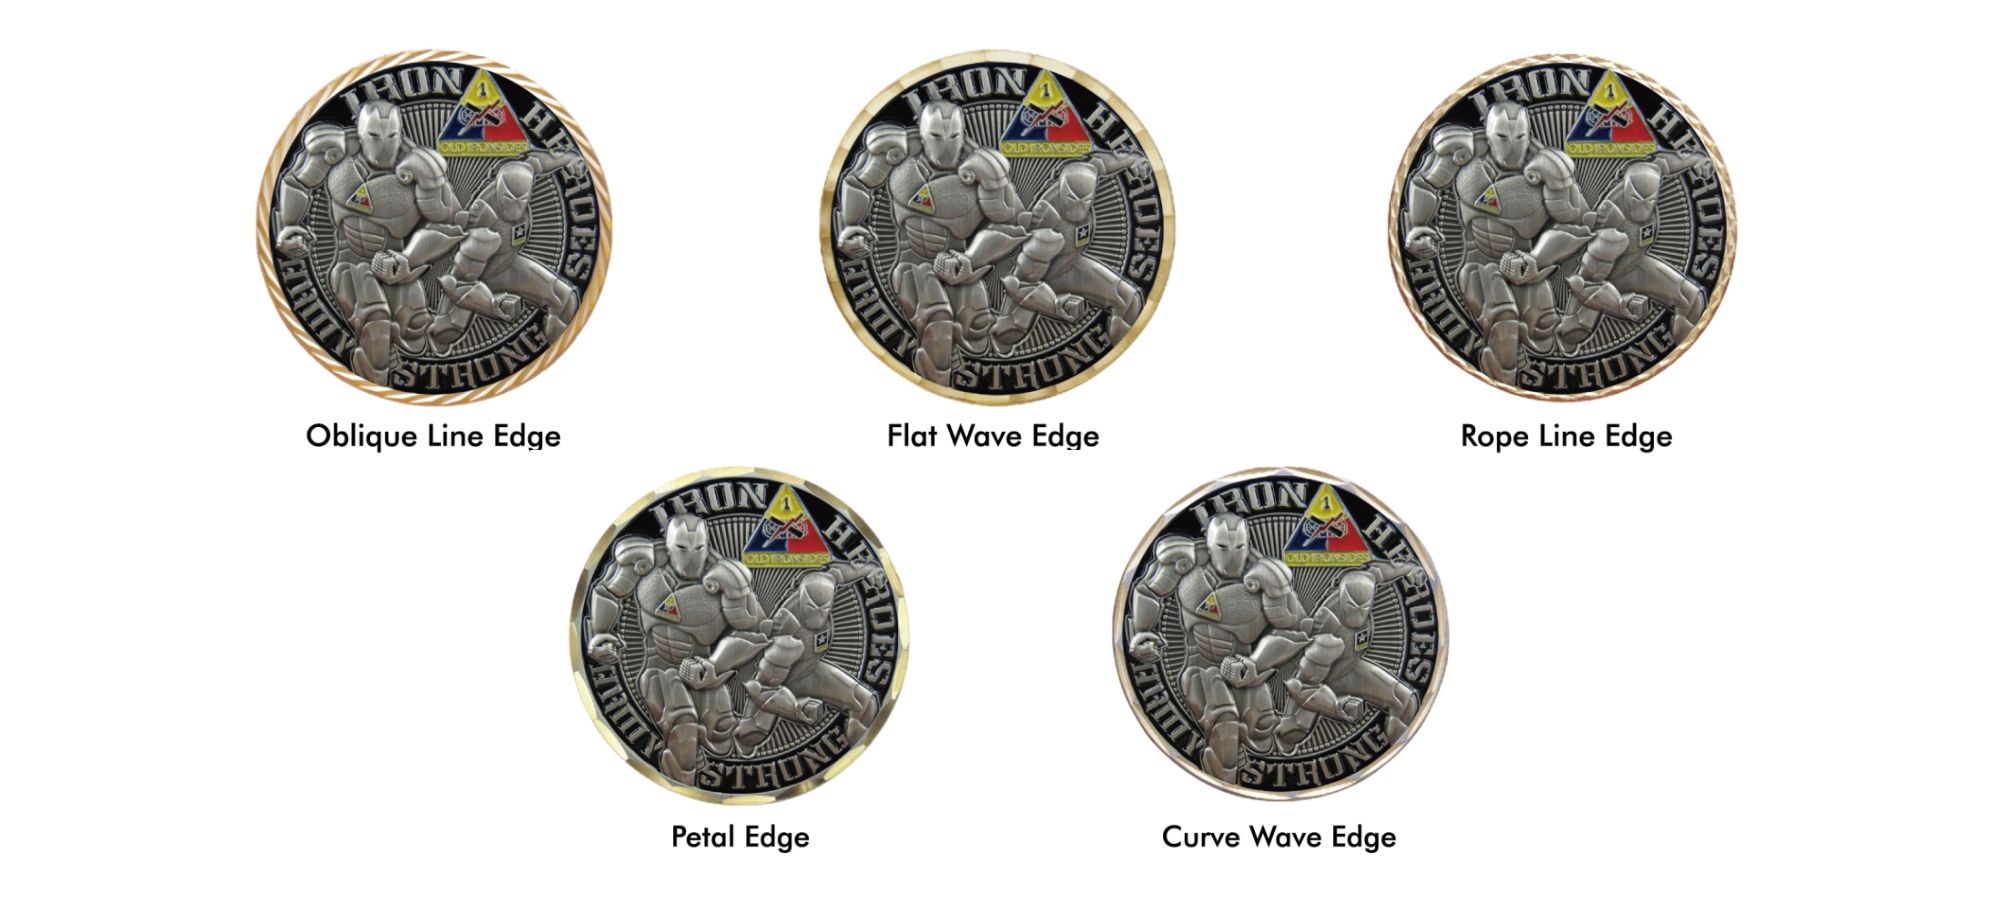 Segítségünkkel létrehozhatja saját érméit, amelyek tükrözik egyedi stílusát és üzenetét.